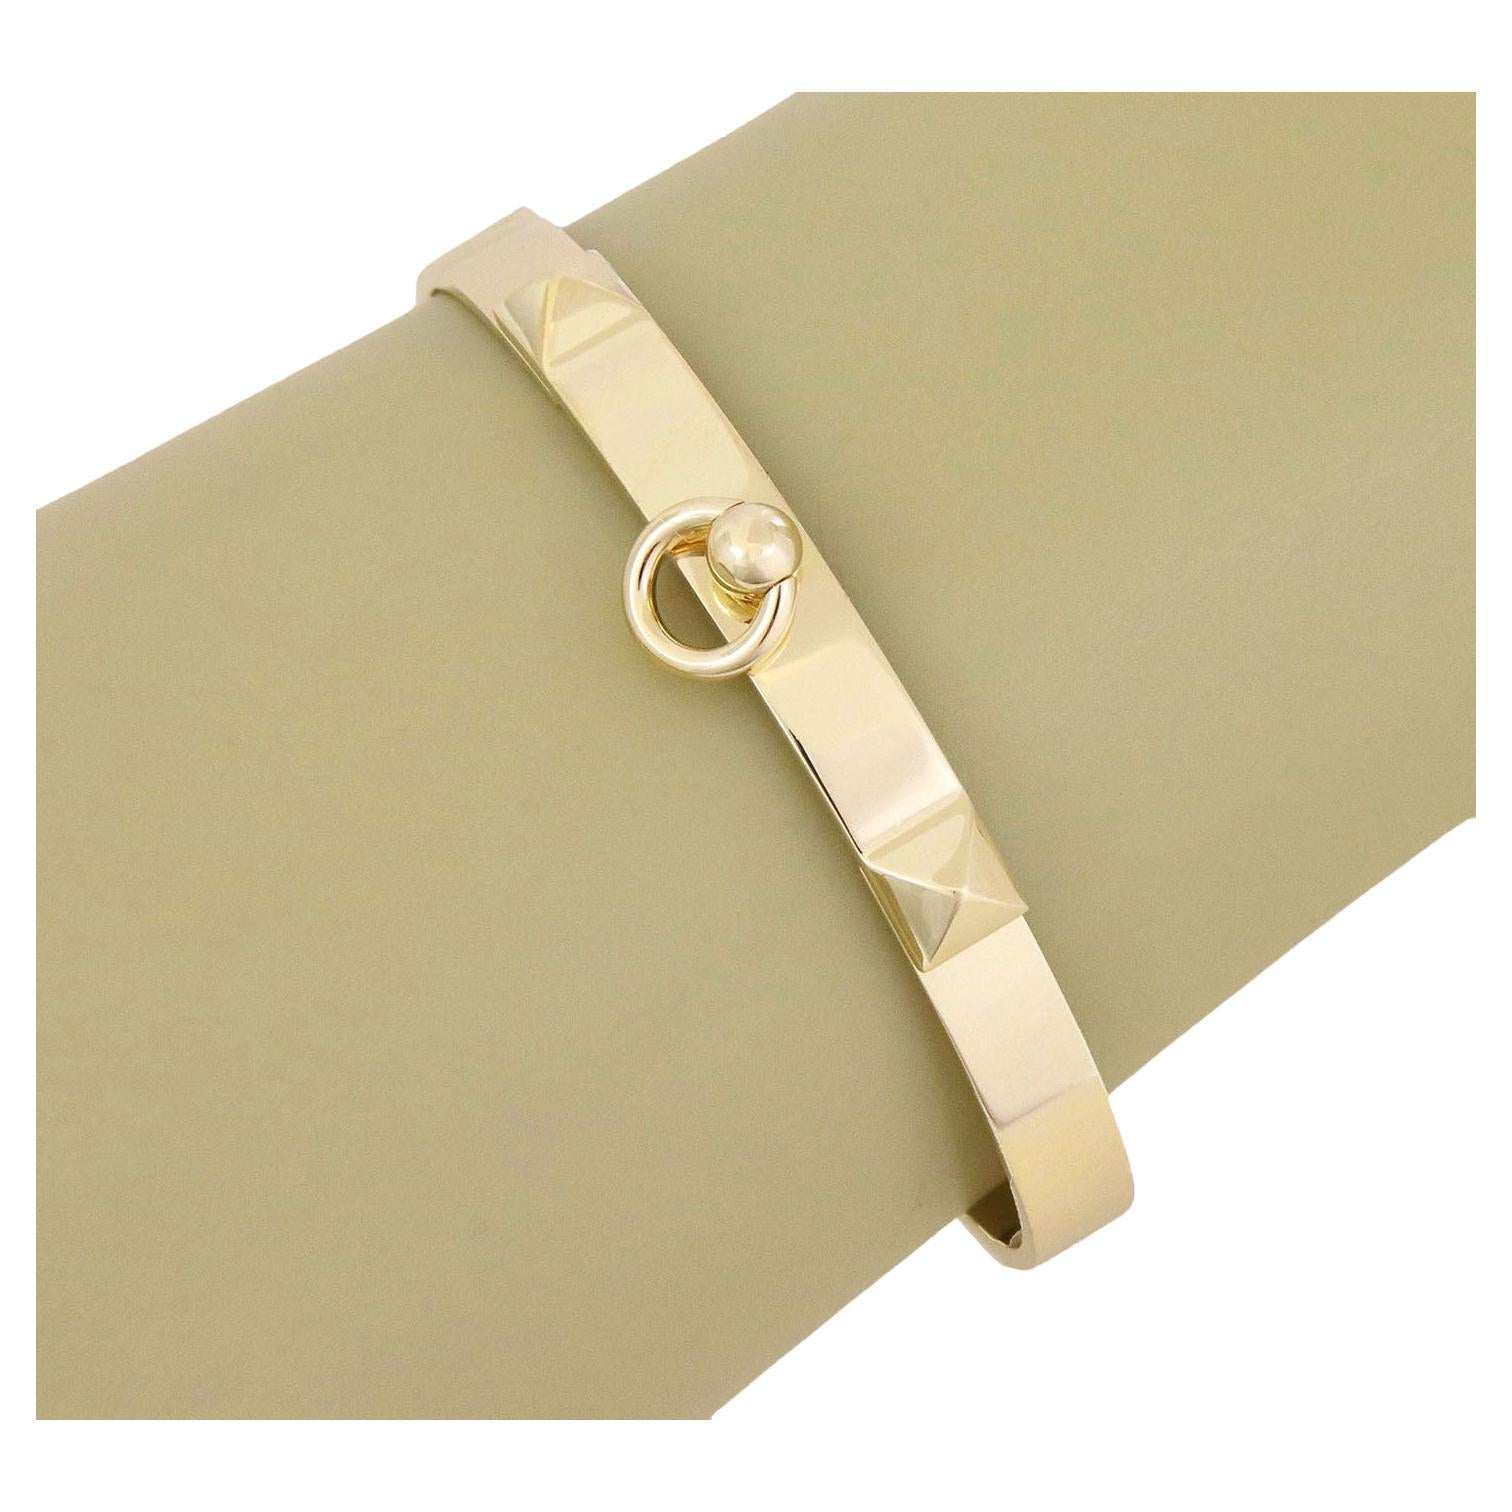 Hermes Collier de Chien 18k Yellow Gold Bangle Bracelet For Sale